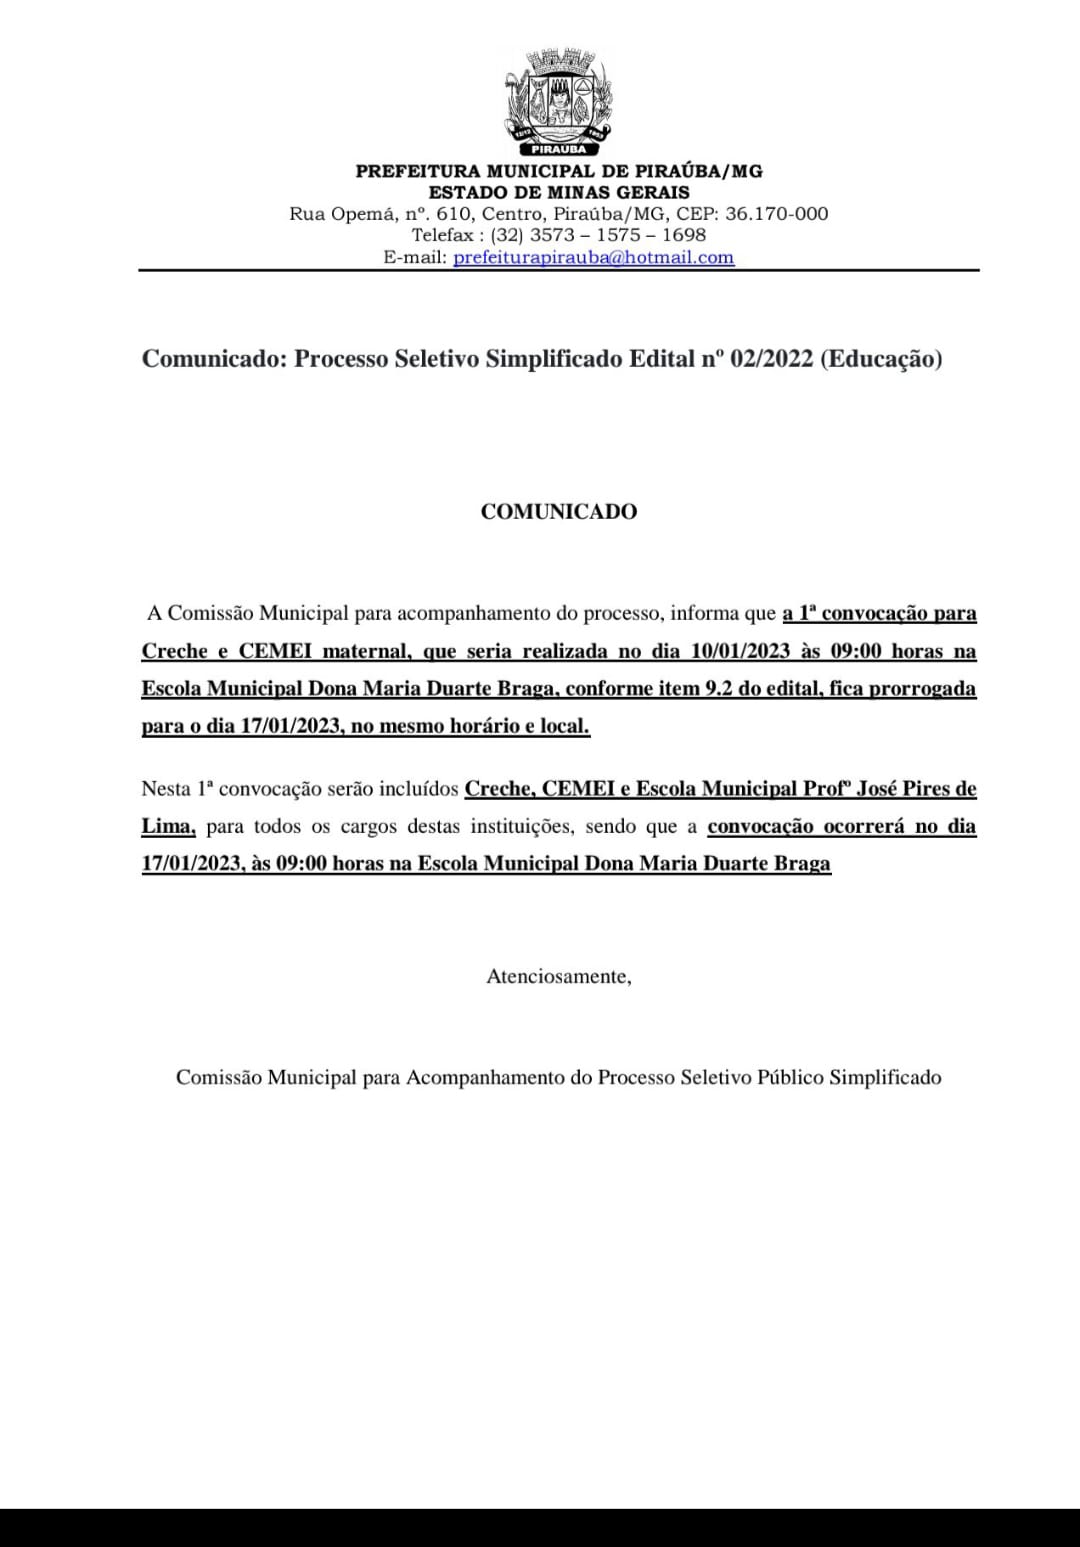 COMUNICADO PROCESSO SELETIVO SIMPLIFICADO Nº 02/2022 (EDUCAÇÃO)